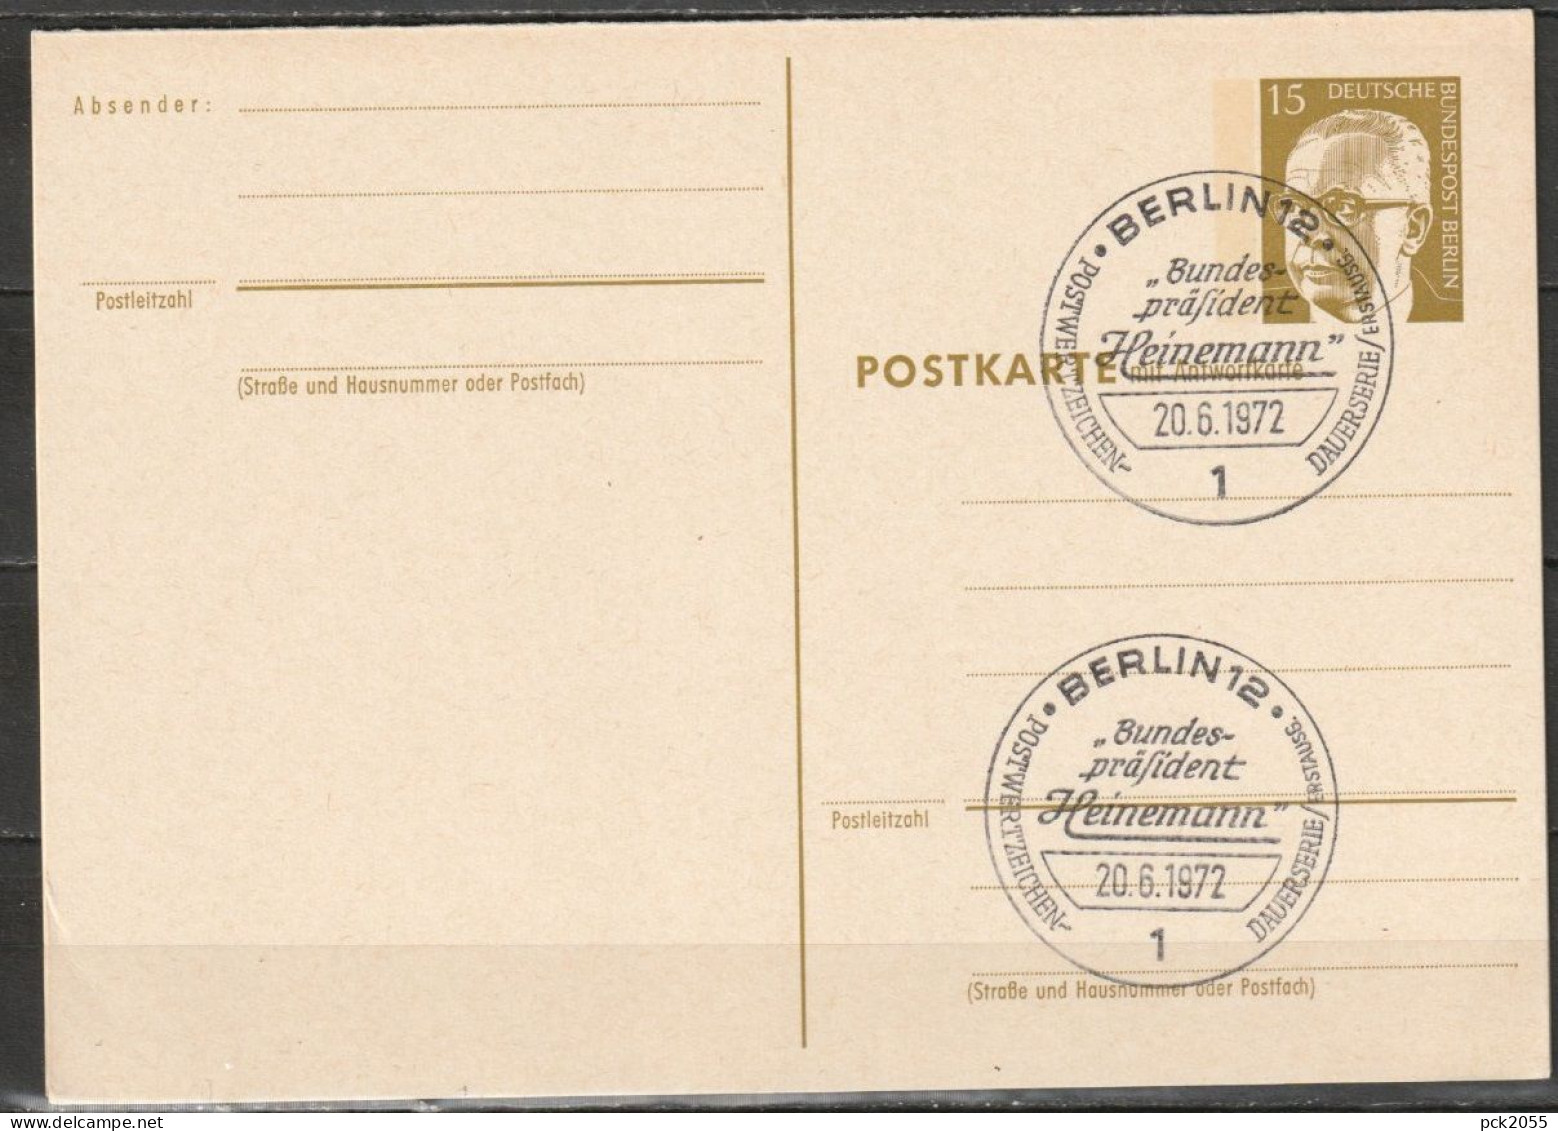 Berlin Ganzsache 1971/72 Mi.-Nr. P 87 Ersttagsstempel BERLIN 20.6.72  ( PK 208 ) - Postkarten - Gebraucht